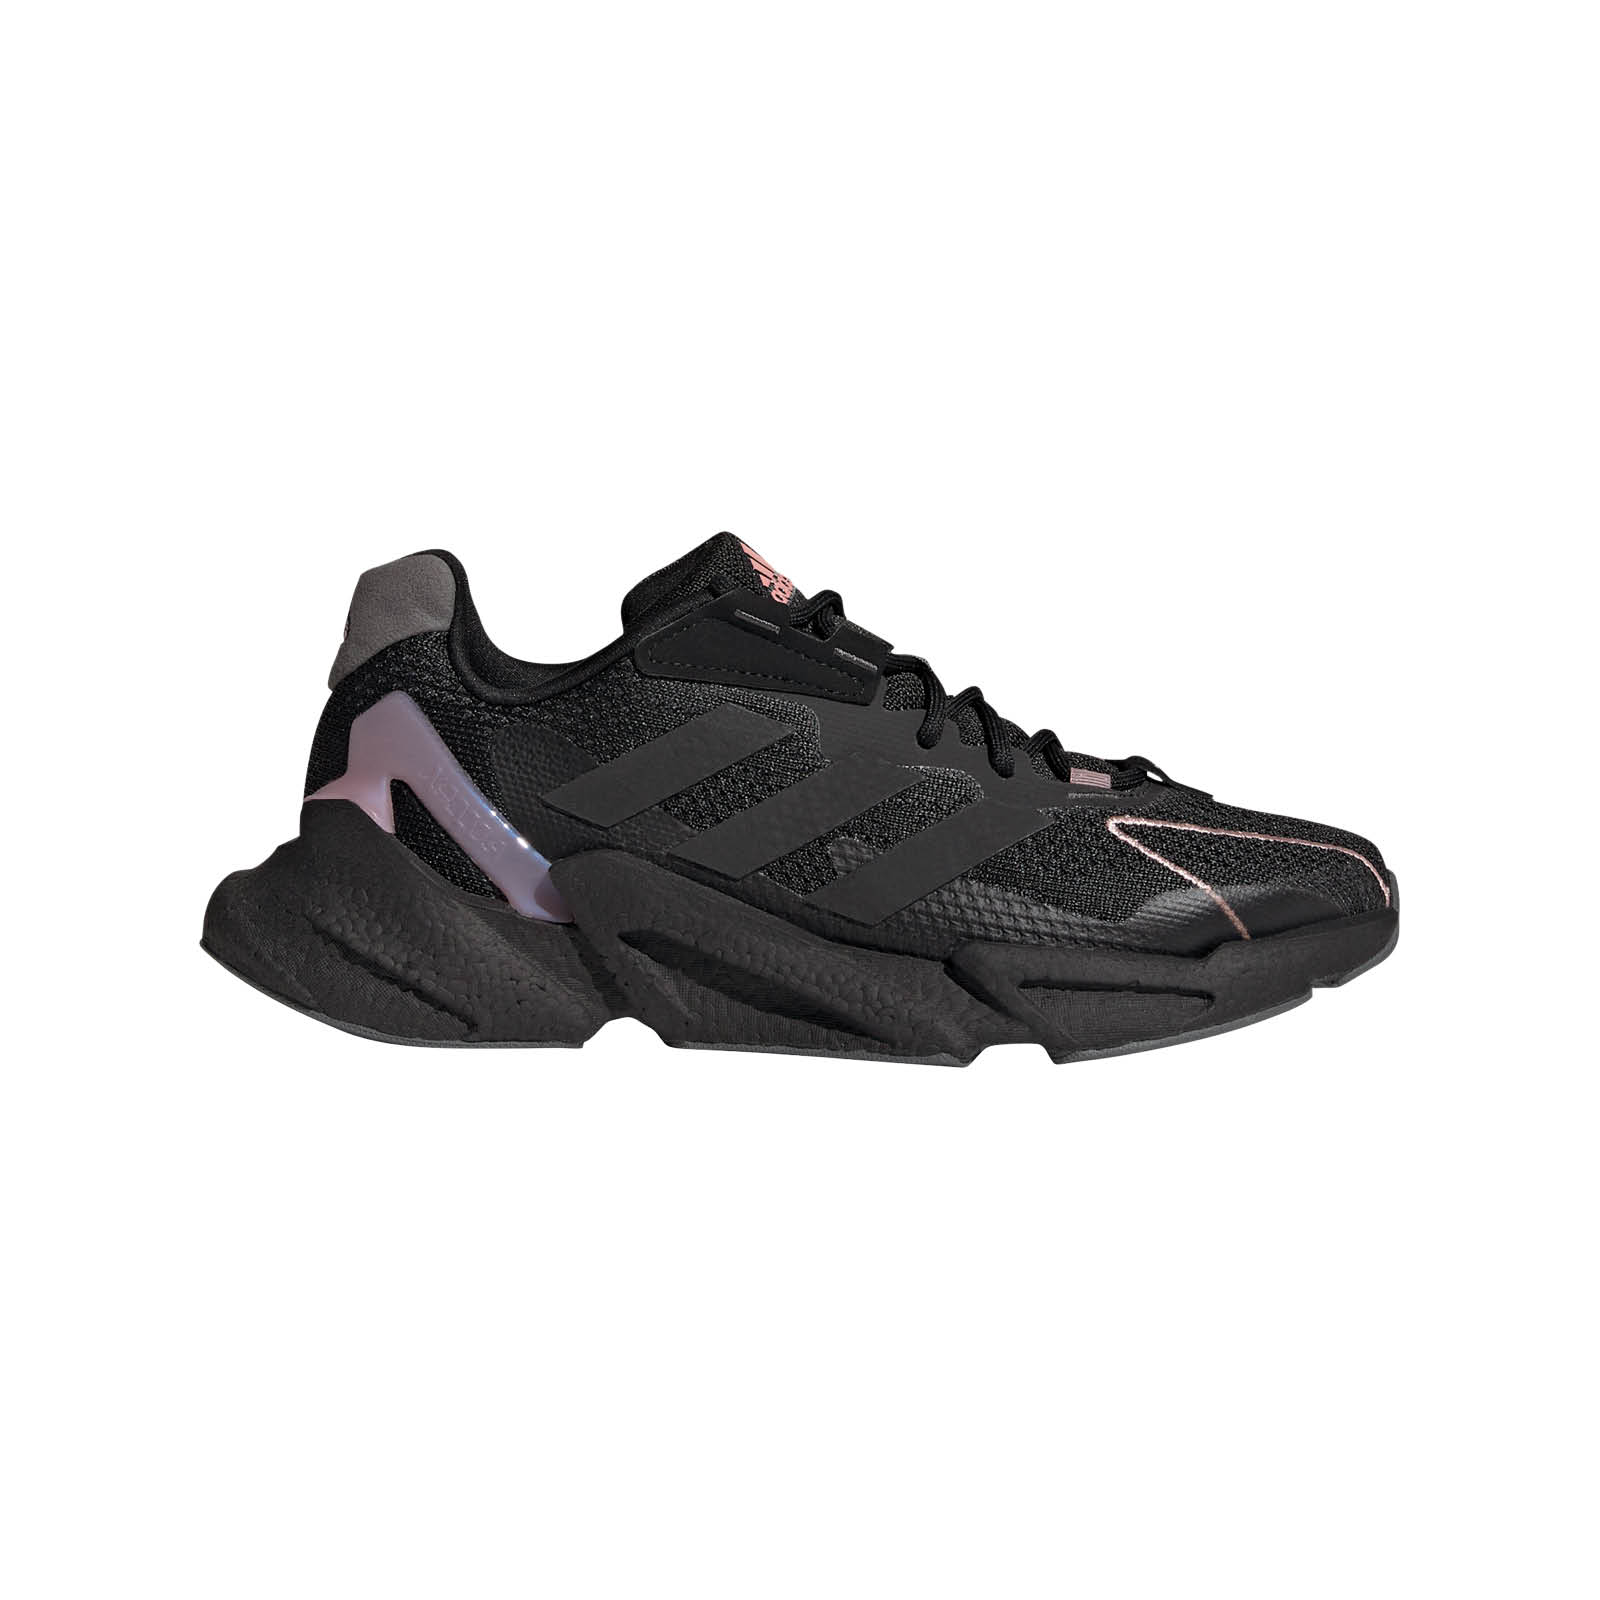 Γυναικεία > Παπούτσια > Αθλητικά > Παπούτσι Low Cut adidas - X9000L4 W - CORE BLACK/CORE BLACK